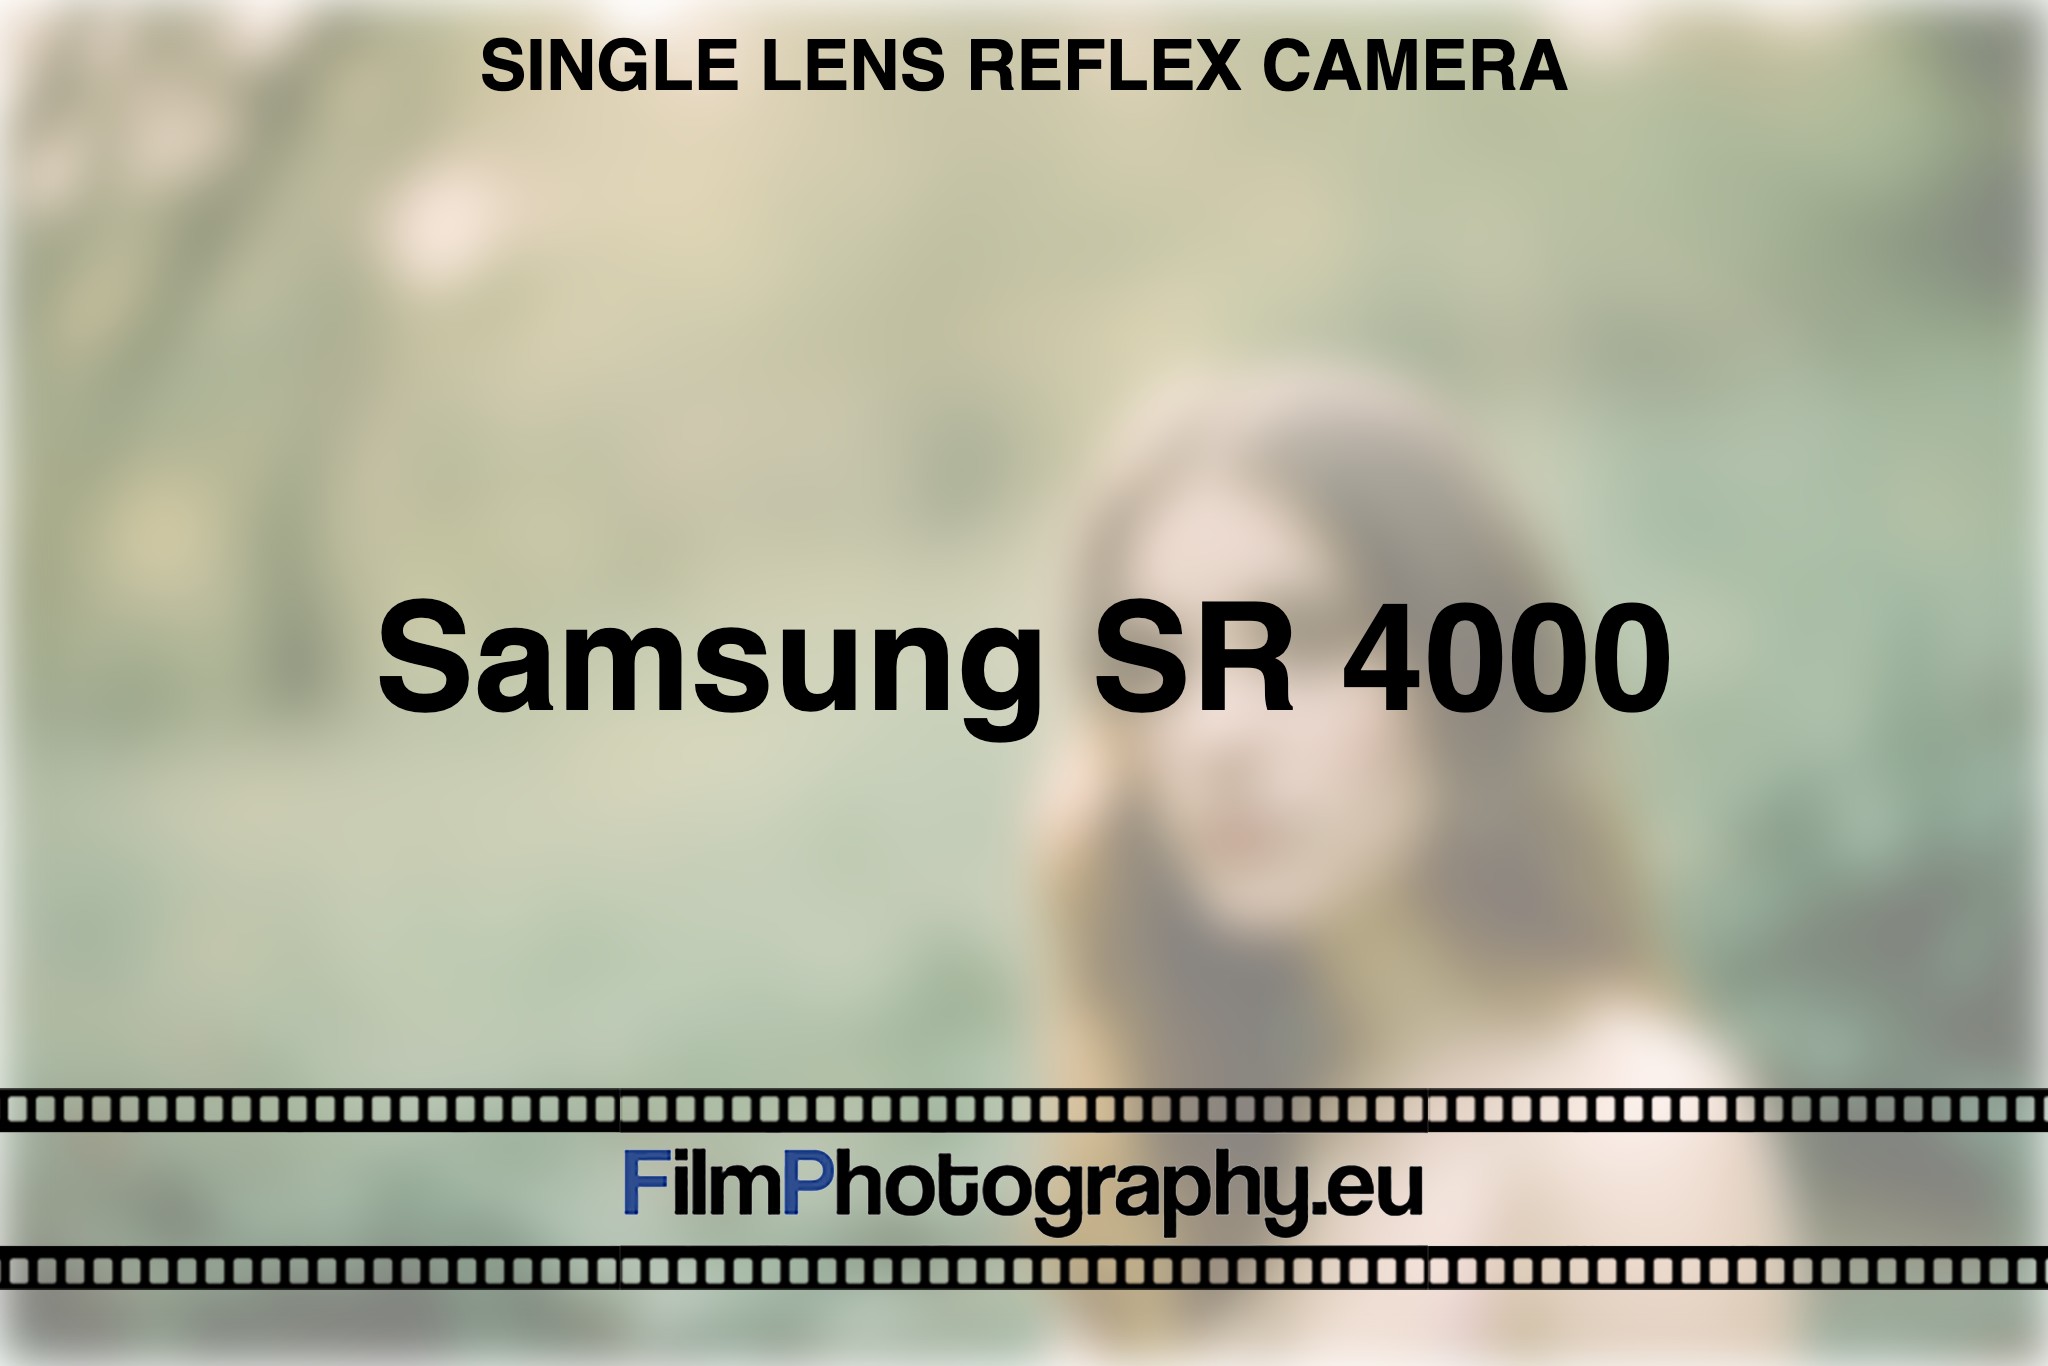 samsung-sr-4000-single-lens-reflex-camera-bnv